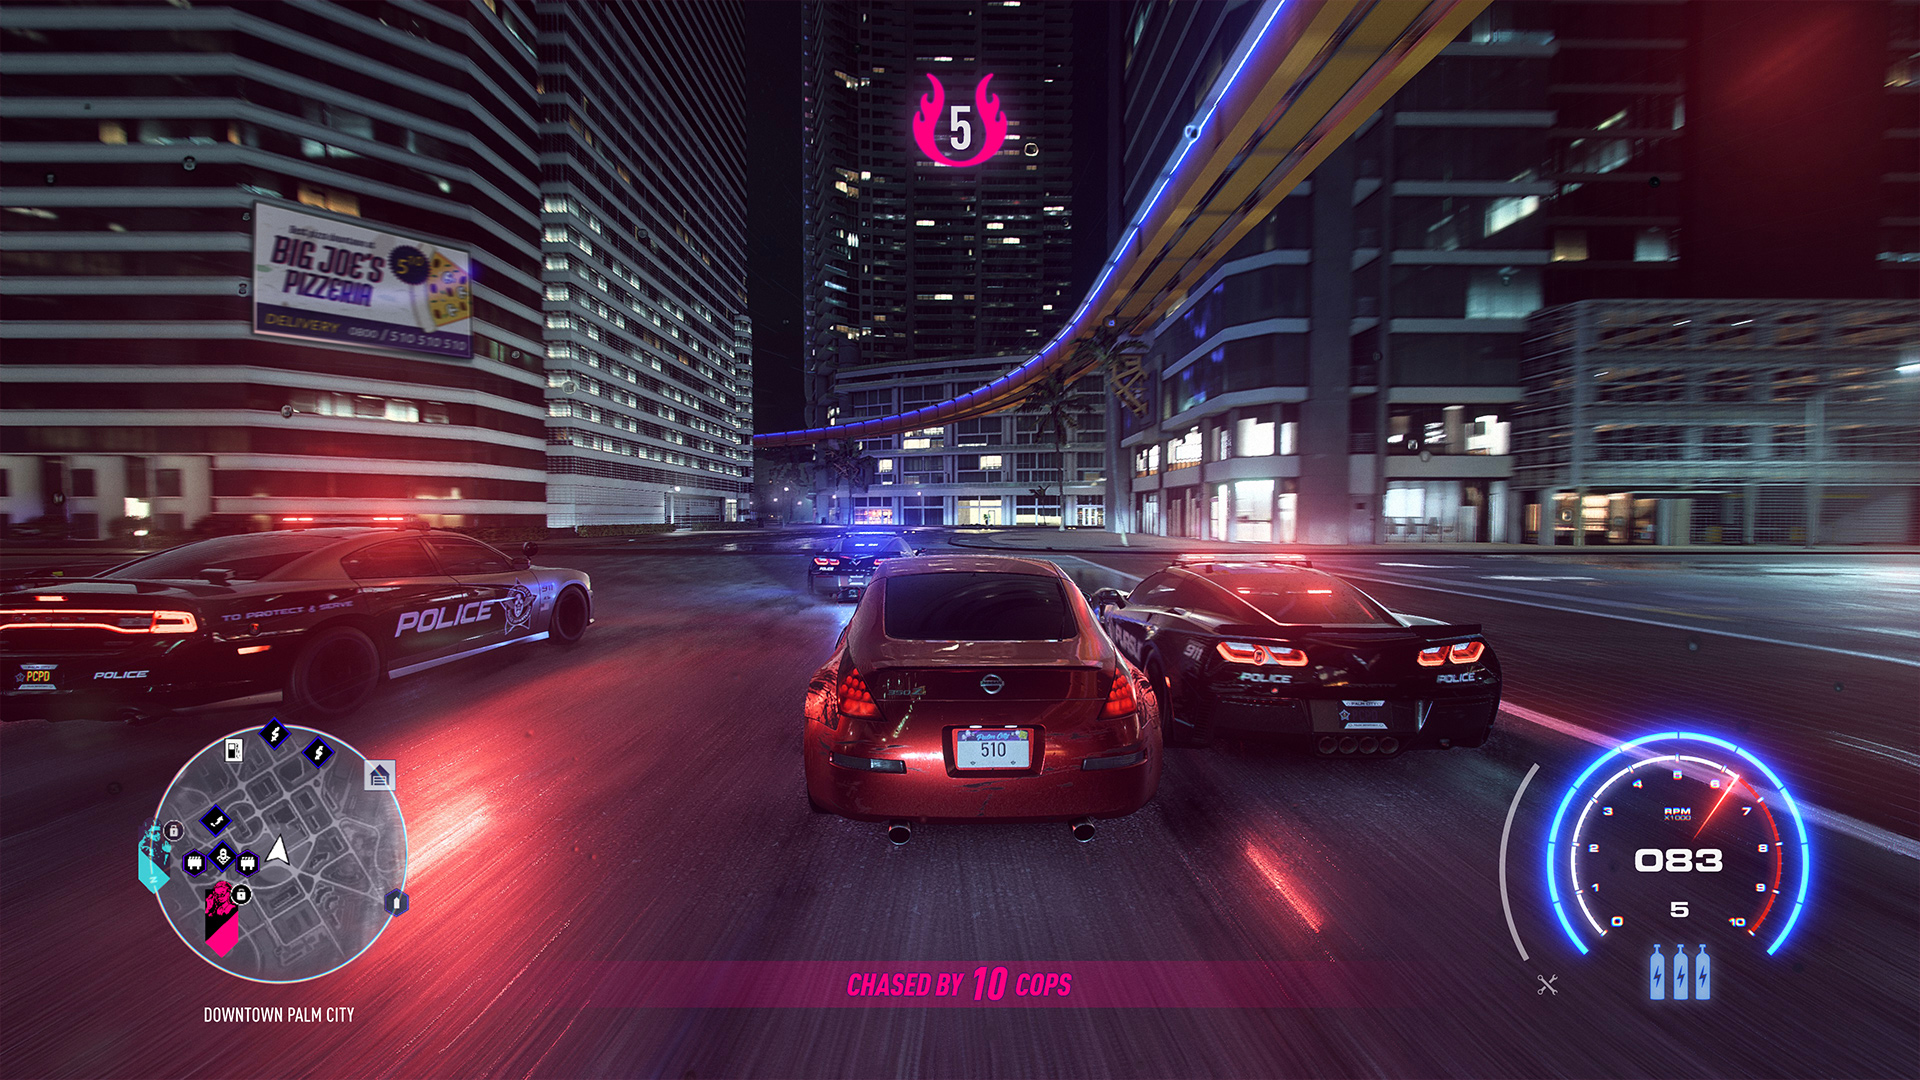 Yeni Need For Speed Oyunu İçin İlk Resmi Görsel Paylaşıldı - Technopat